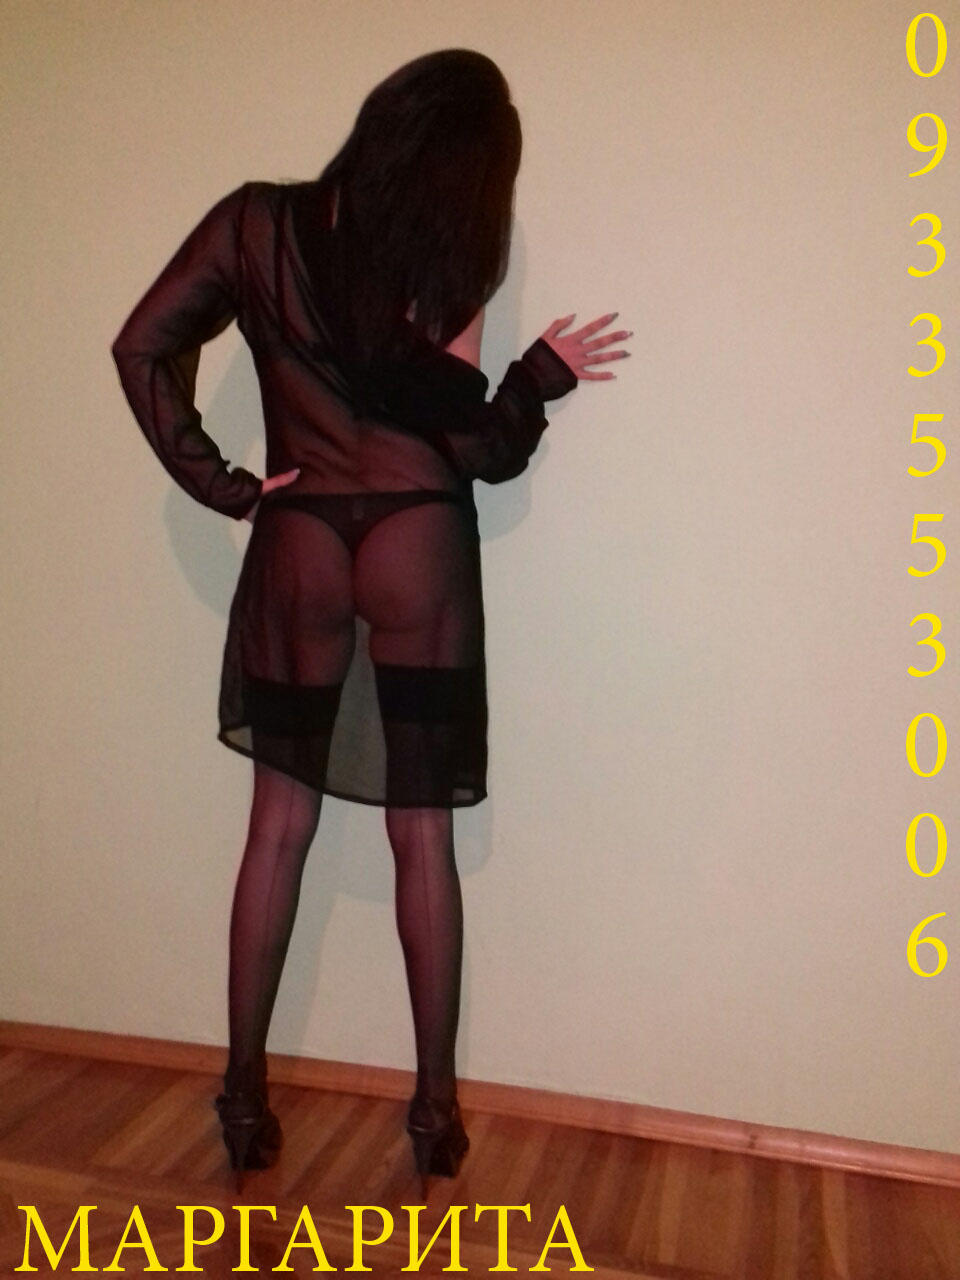 Проститутка Маргарита, фото 6, тел: 0933553006. В центре города - Киев